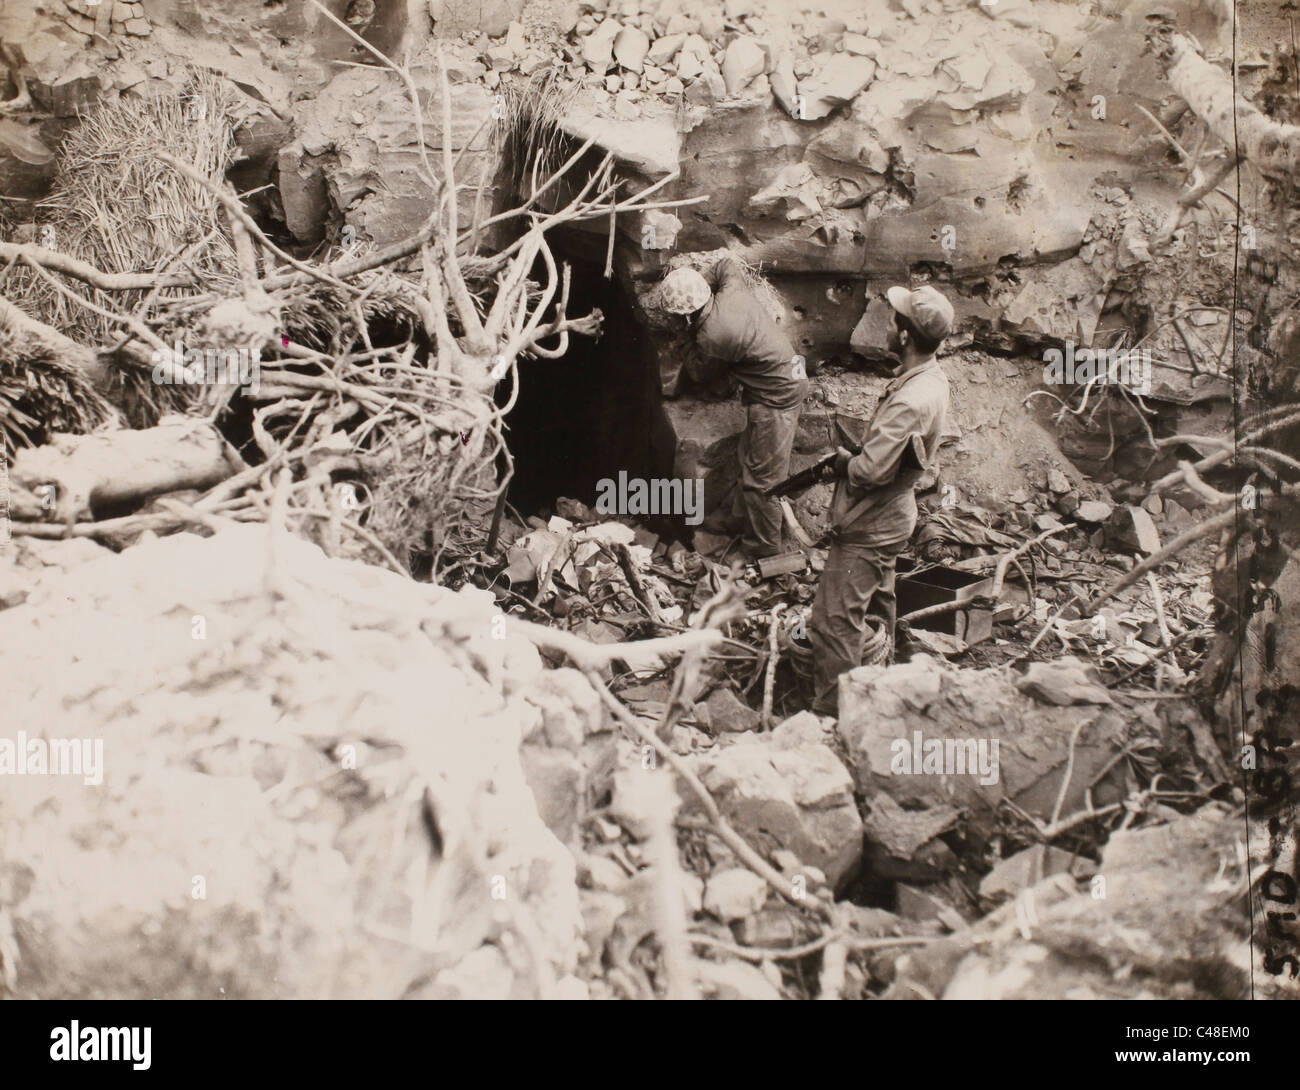 Le caporal Leone Oliver lance grenade fumigène en grotte. IWO Jima. Mars 1945 Banque D'Images